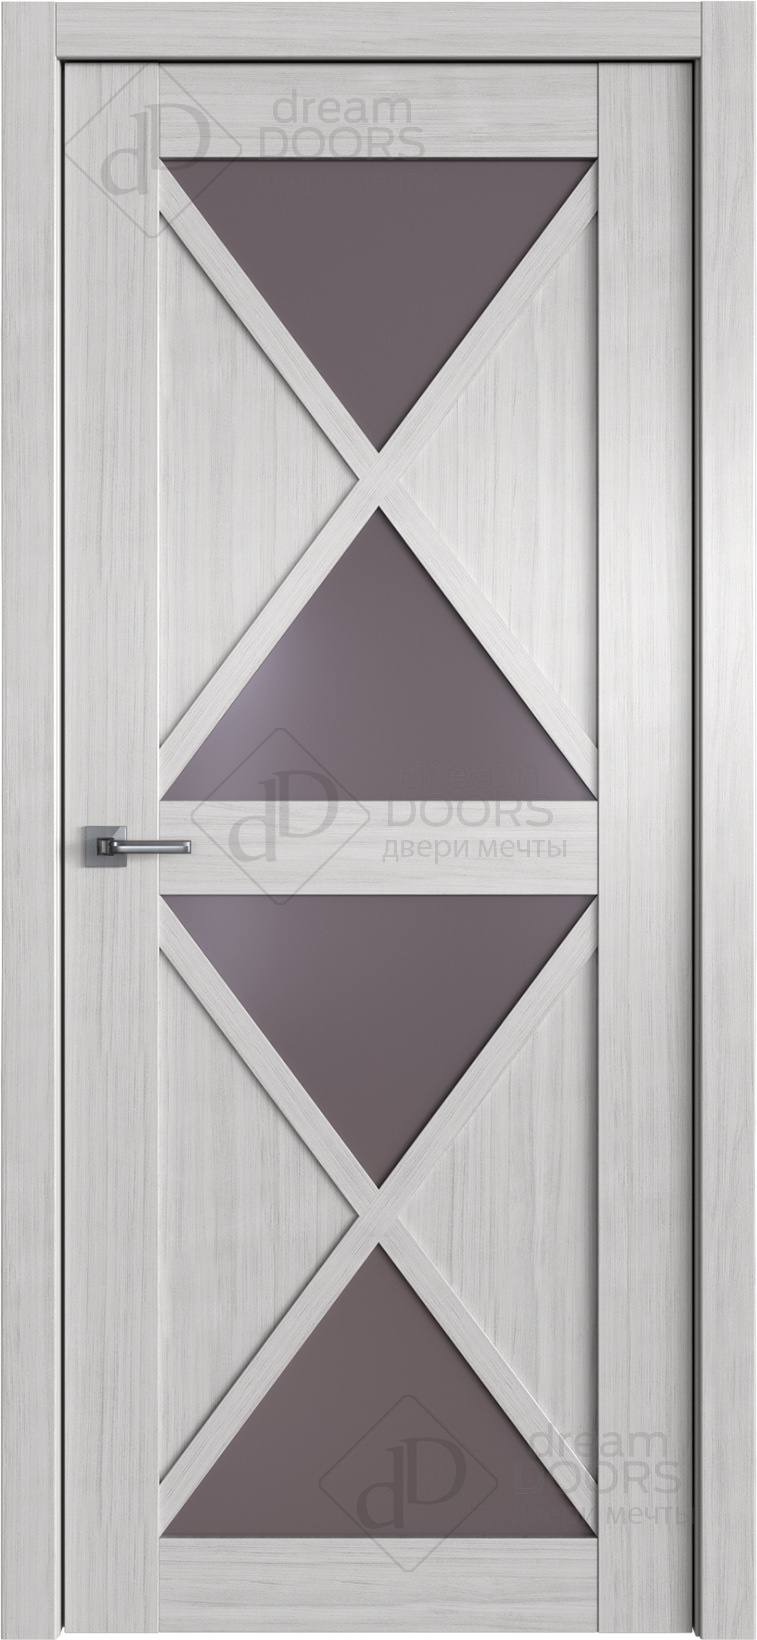 Dream Doors Межкомнатная дверь W40, арт. 20100 - фото №1